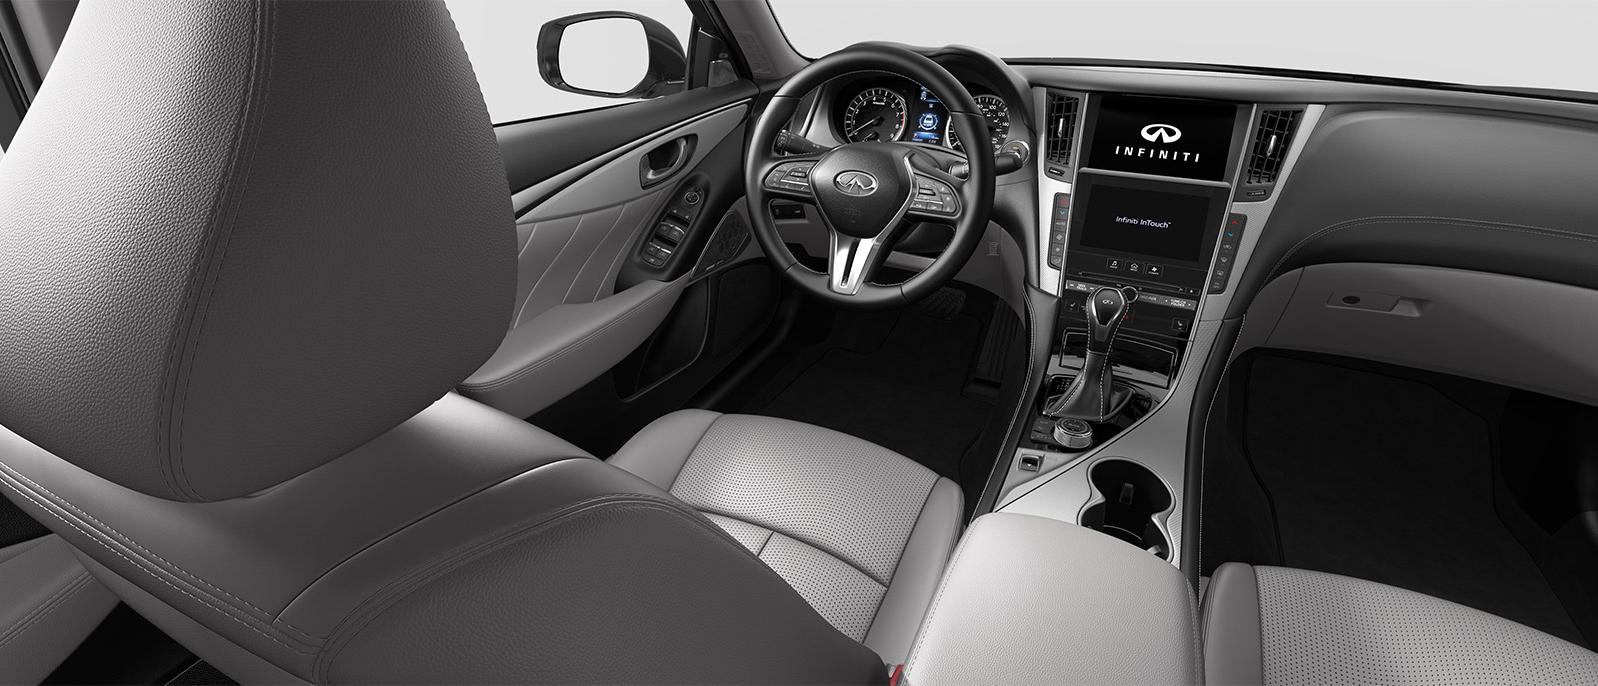 INFINITI Q50 Luxe trim interior in Stone color scheme.